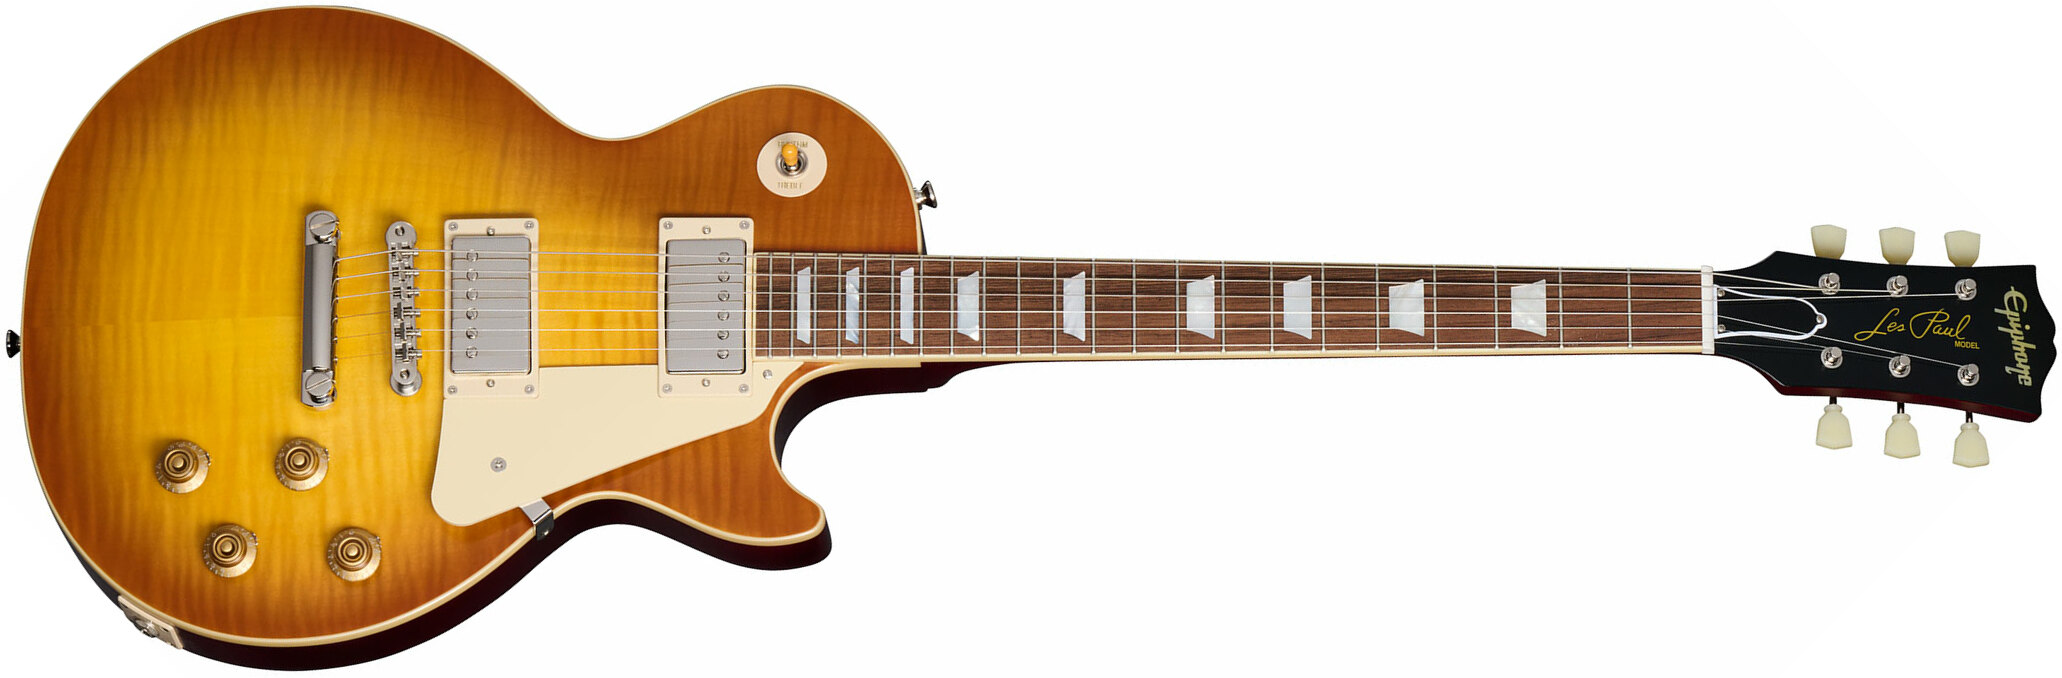 Epiphone 1959 Les Paul Standard Inspired By 2h Gibson Ht Lau - Vos Iced Tea Burst - Guitare Électrique Single Cut - Main picture